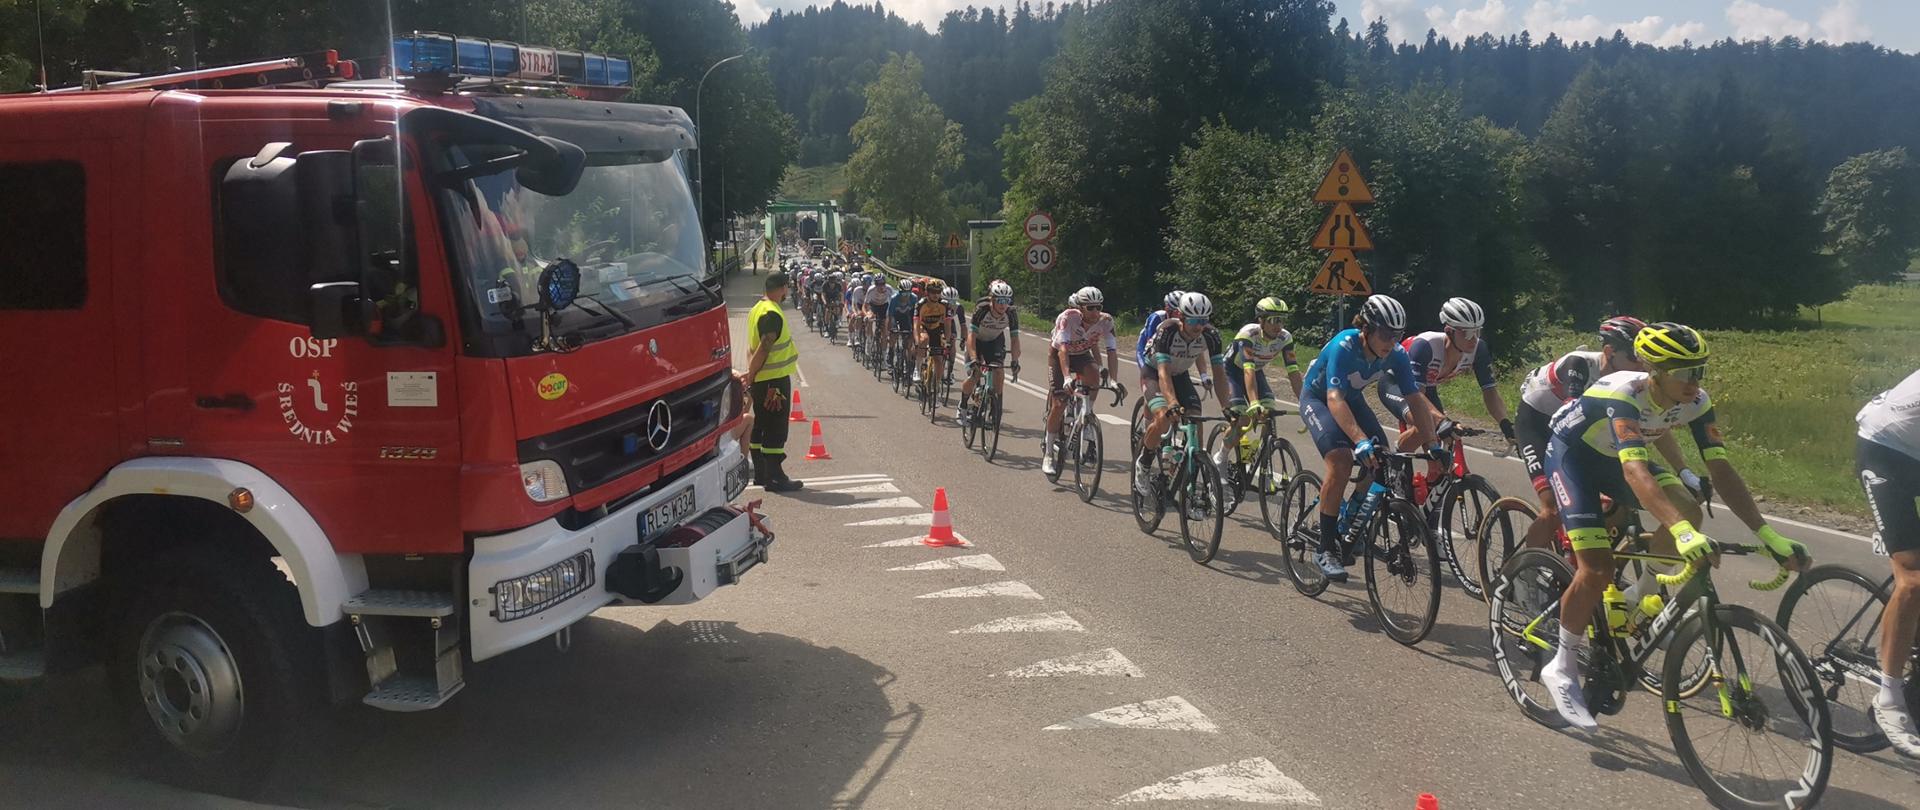 Na zdjęciu widzimy grupę kolarzy , samochód Ratowniczo-Gaśniczy Ochotniczej Straży Pożarnej w Średniej Wsi oraz strażaka który zabezpiecza wyznaczony odcinek drogi.